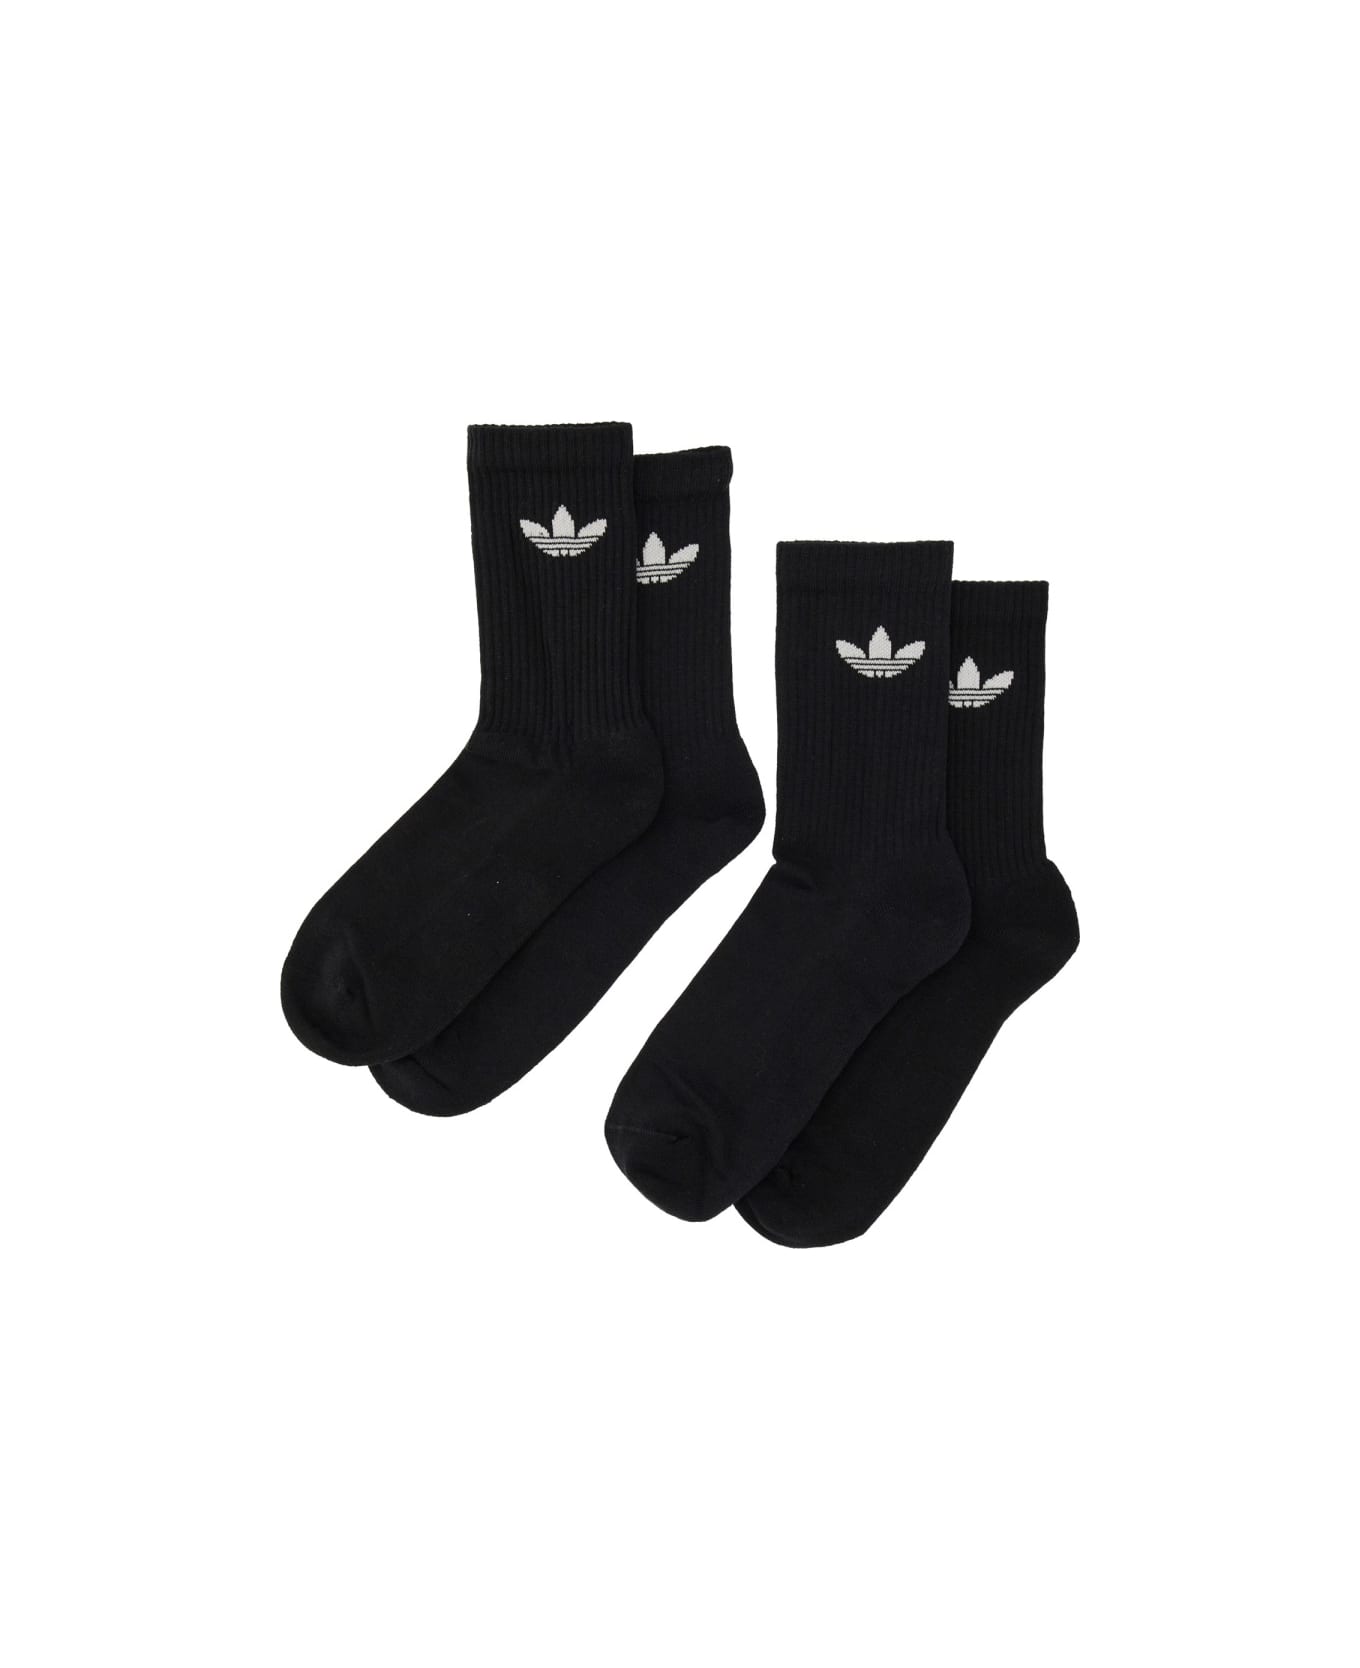 Adidas Originals Trefoil Cushion Crew Socks - MULTICOLOUR